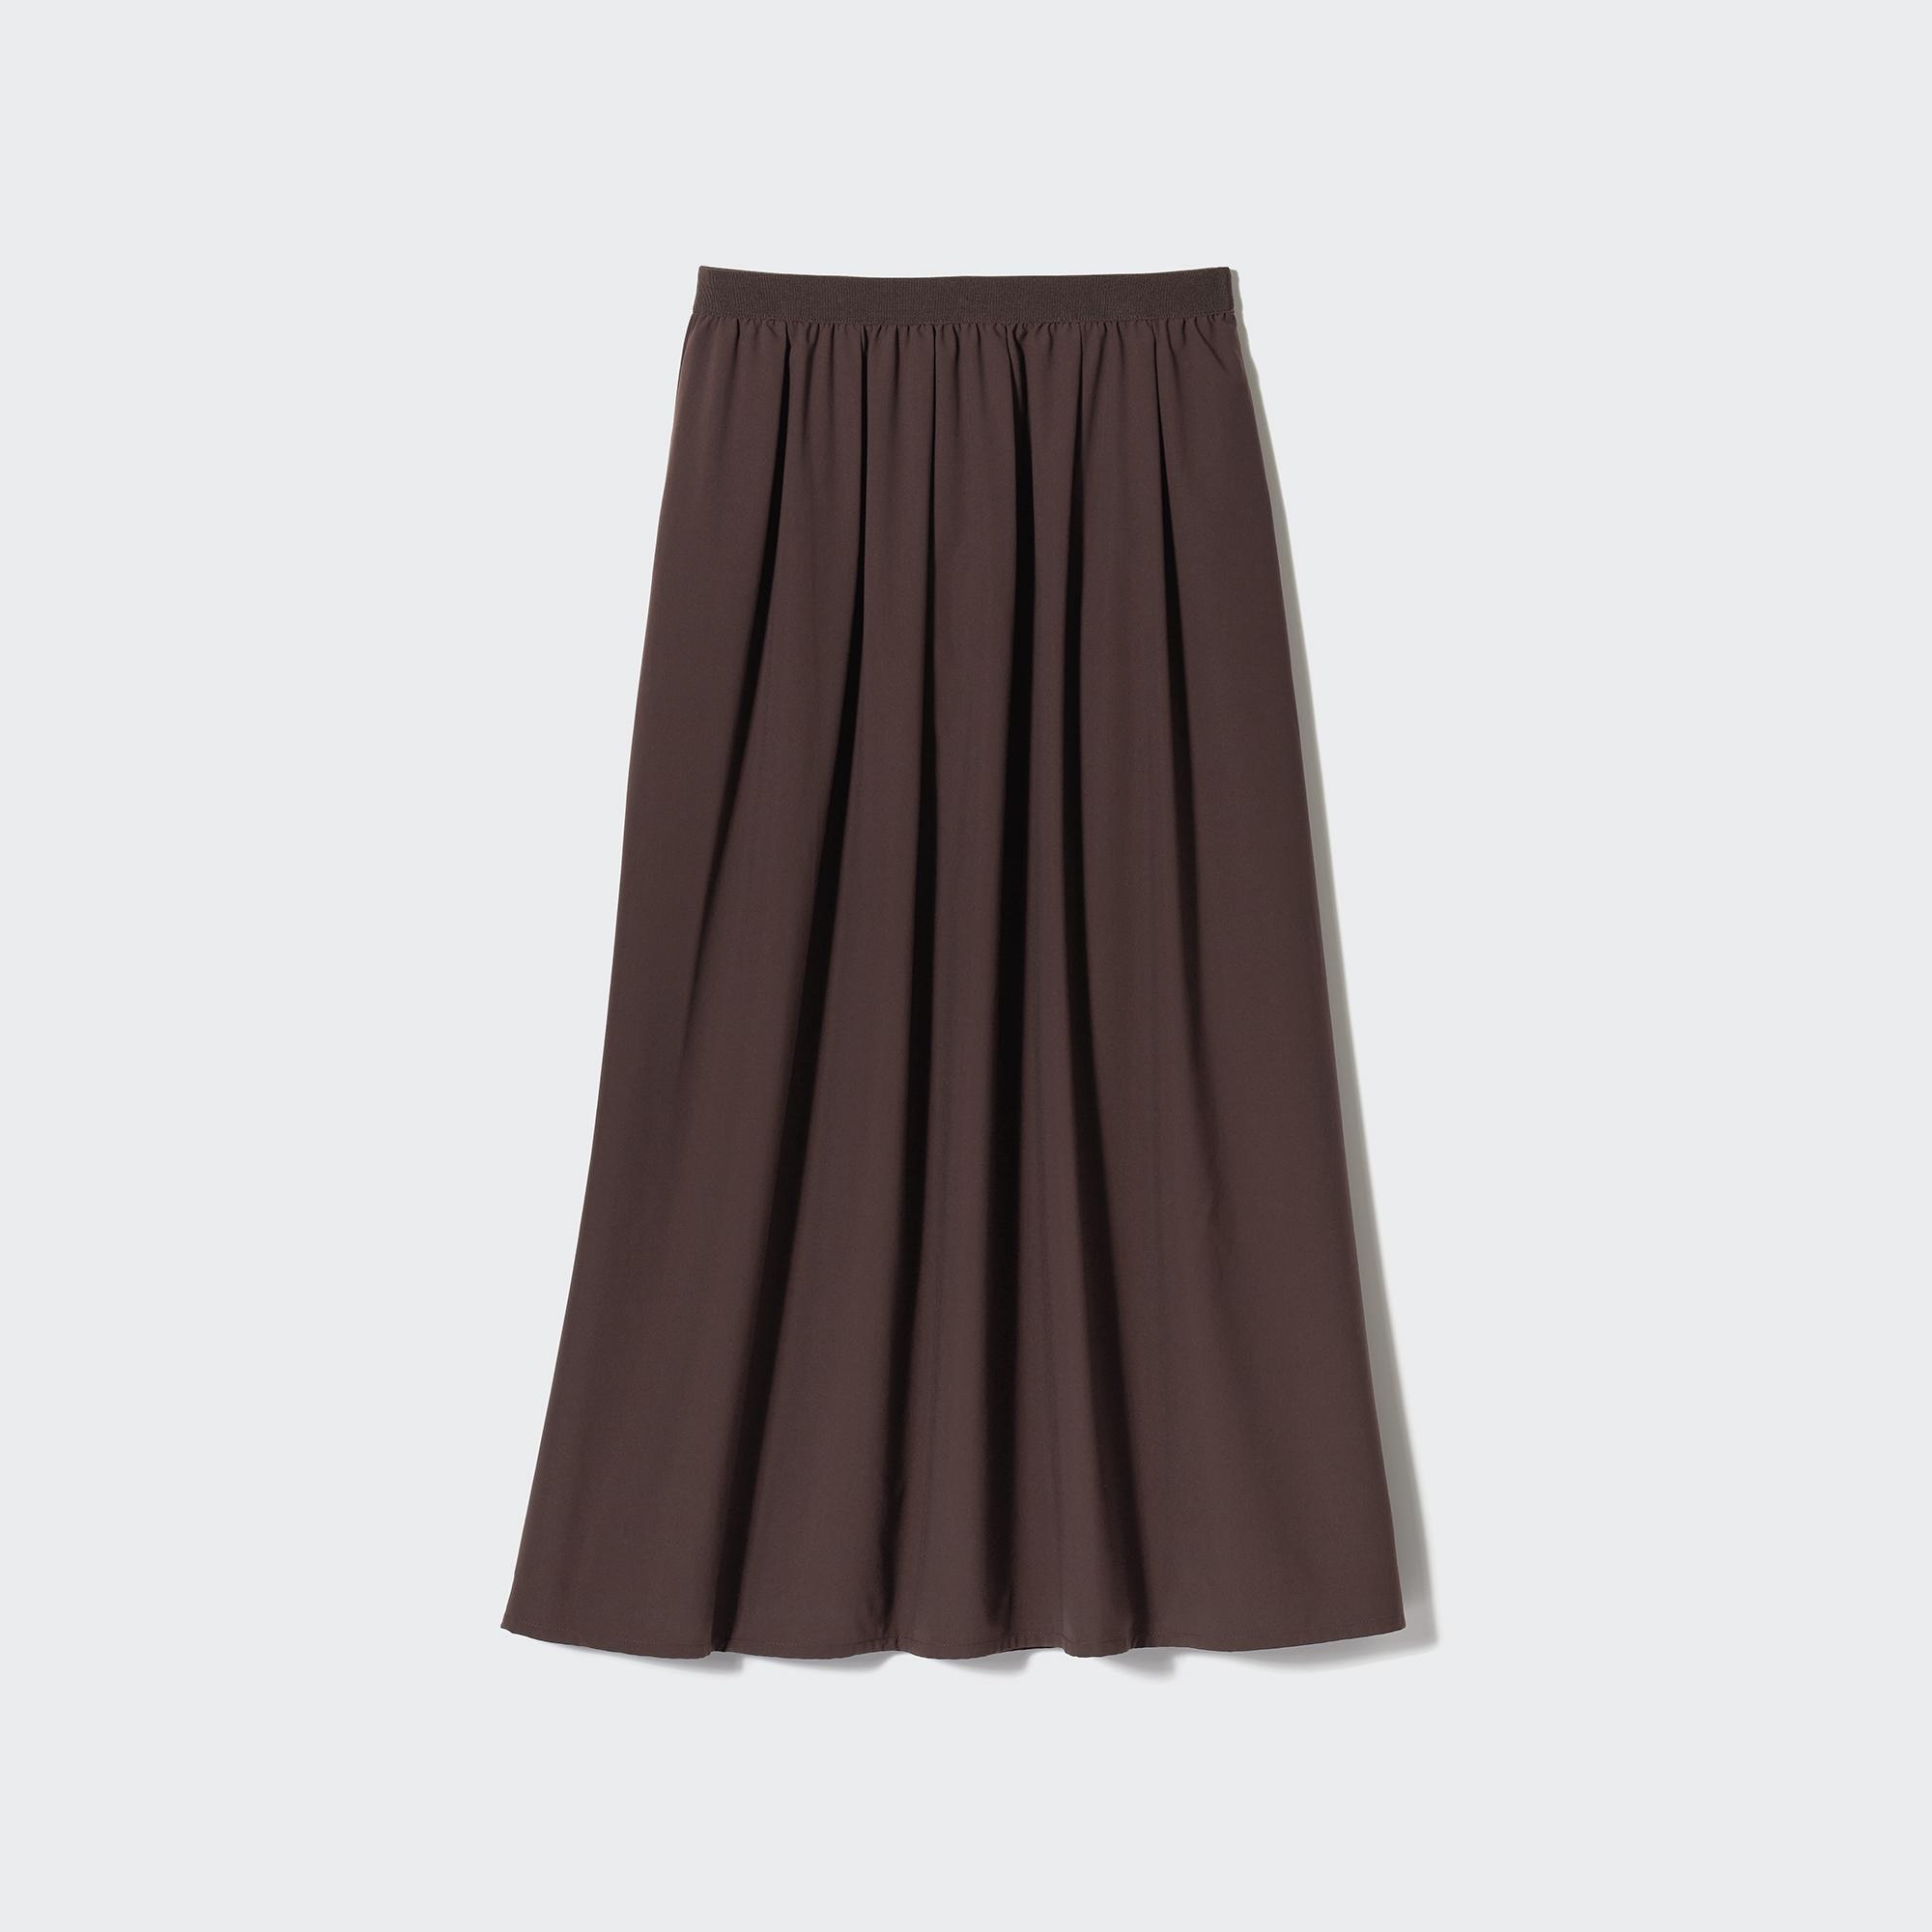 ロングタイトスカートの関連商品 | ユニクロ